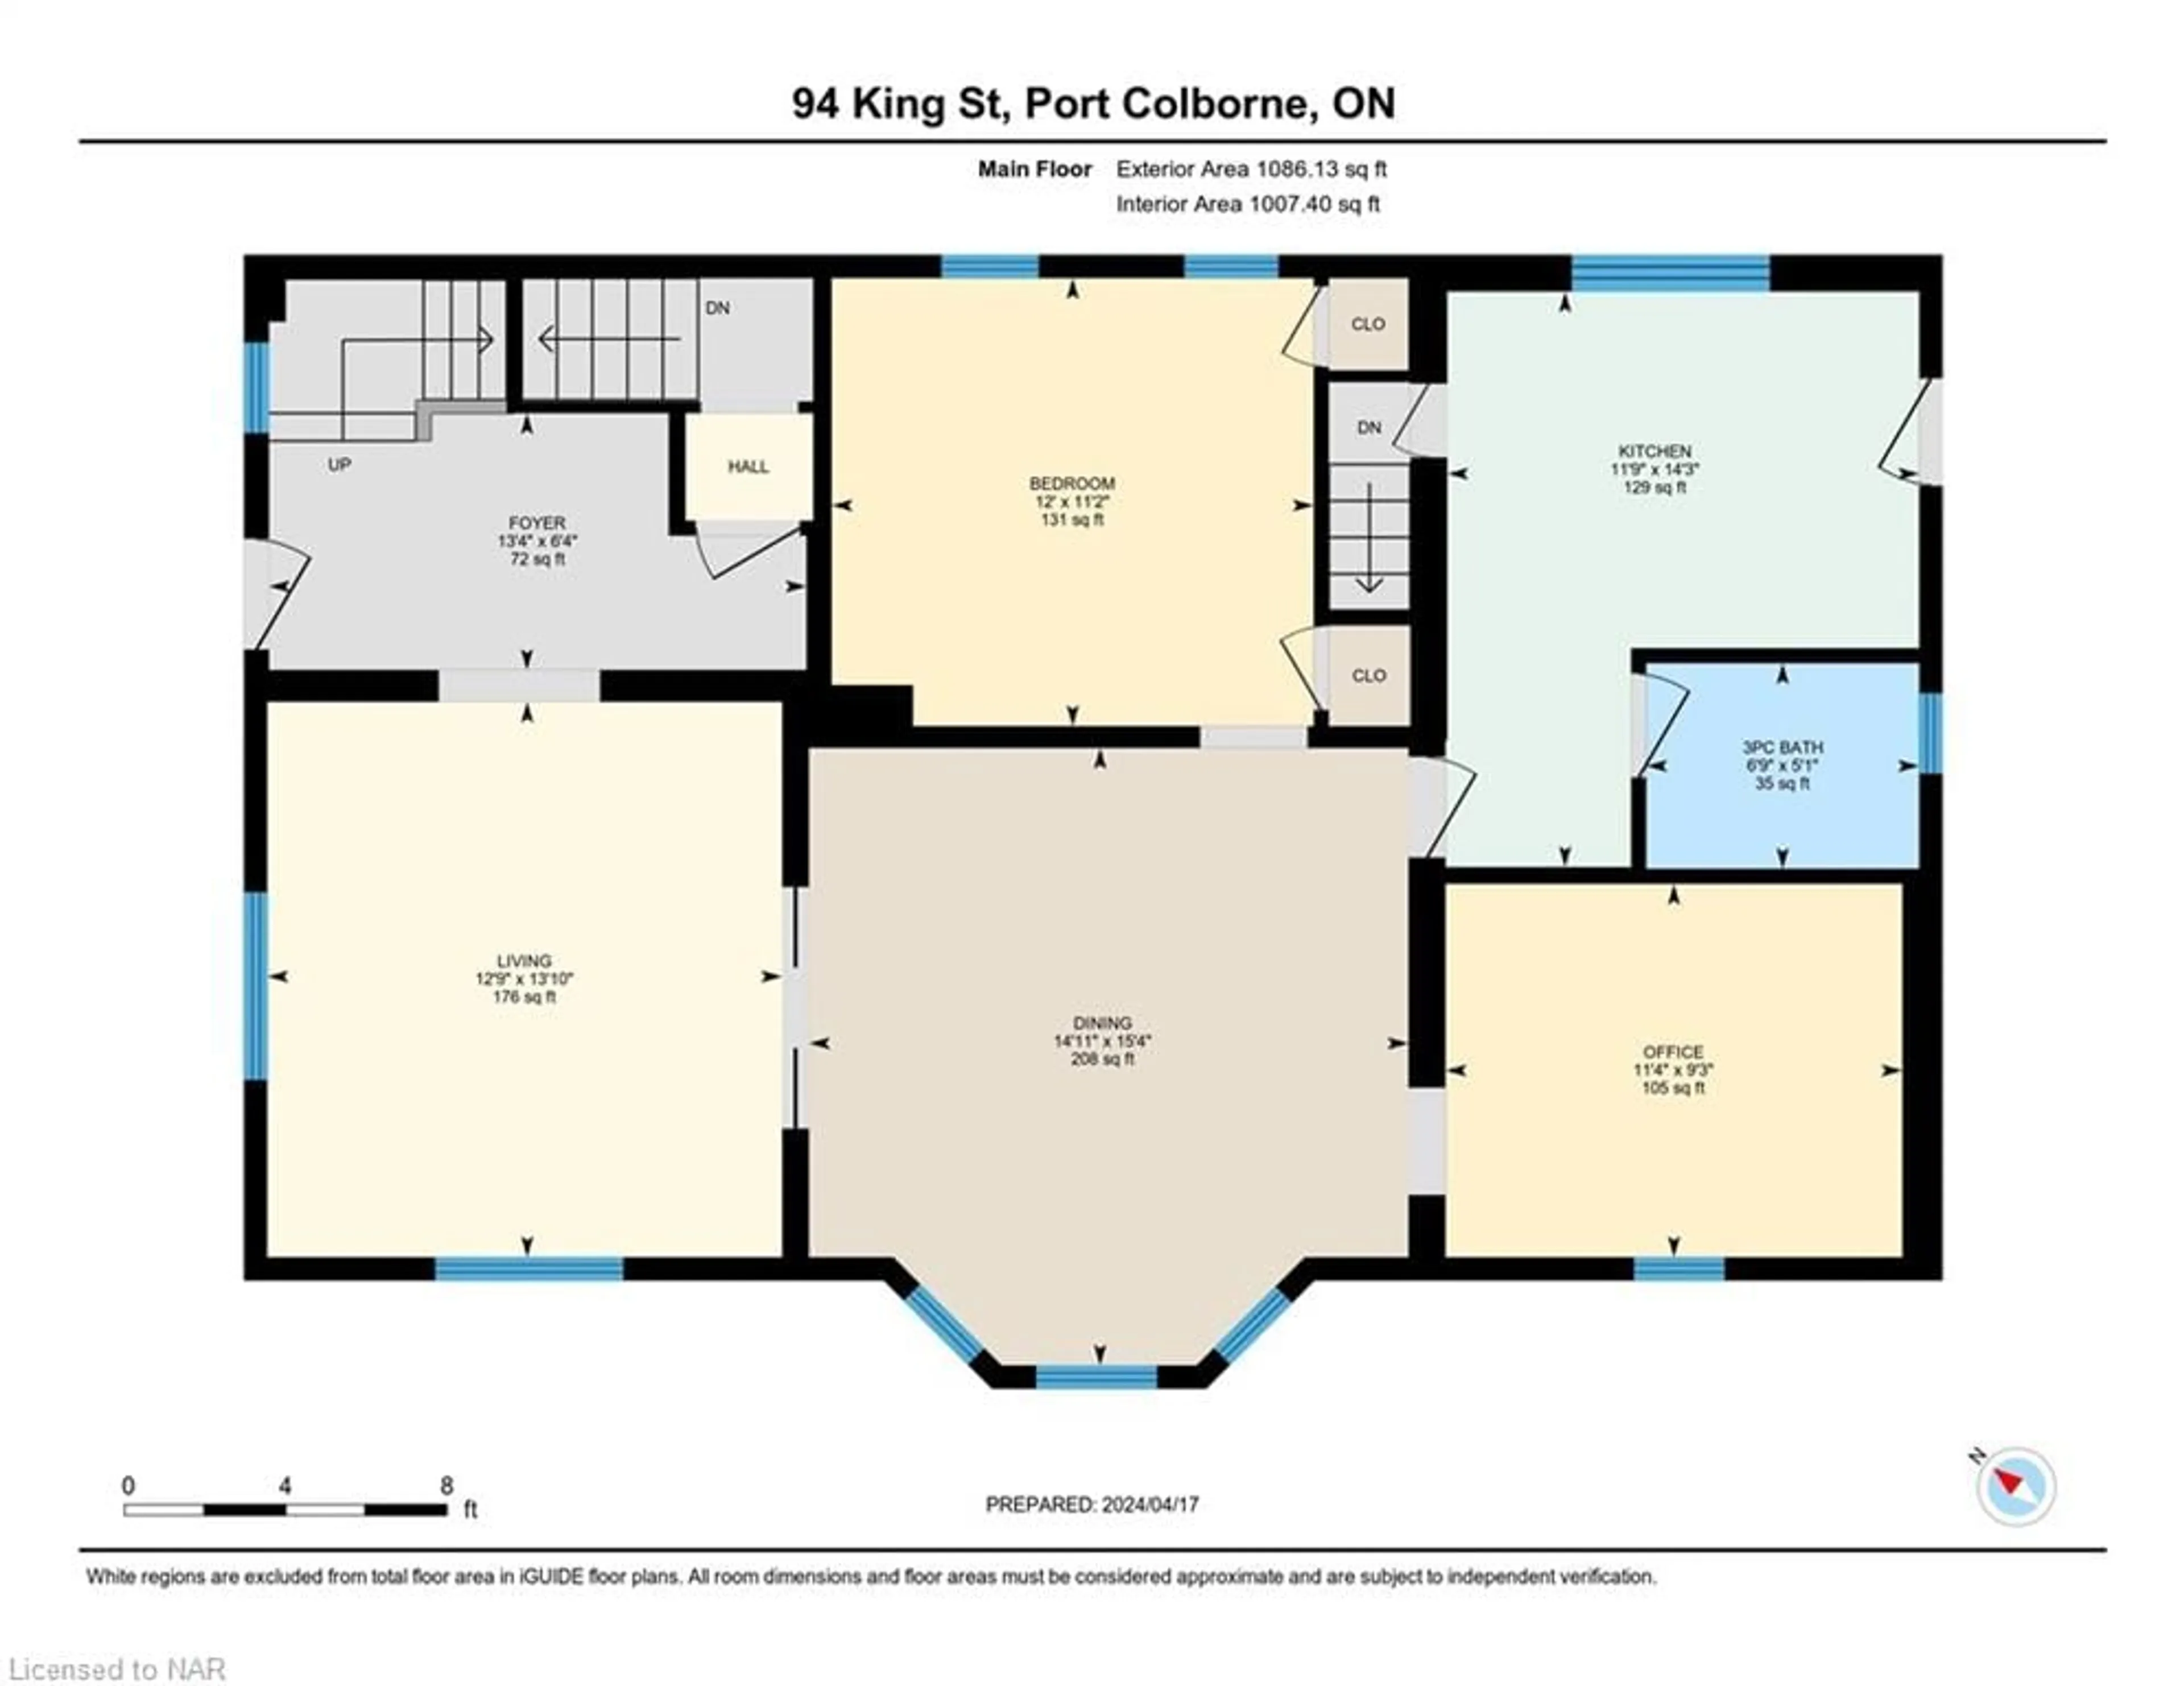 Floor plan for 94 King St, Port Colborne Ontario L3K 4E9